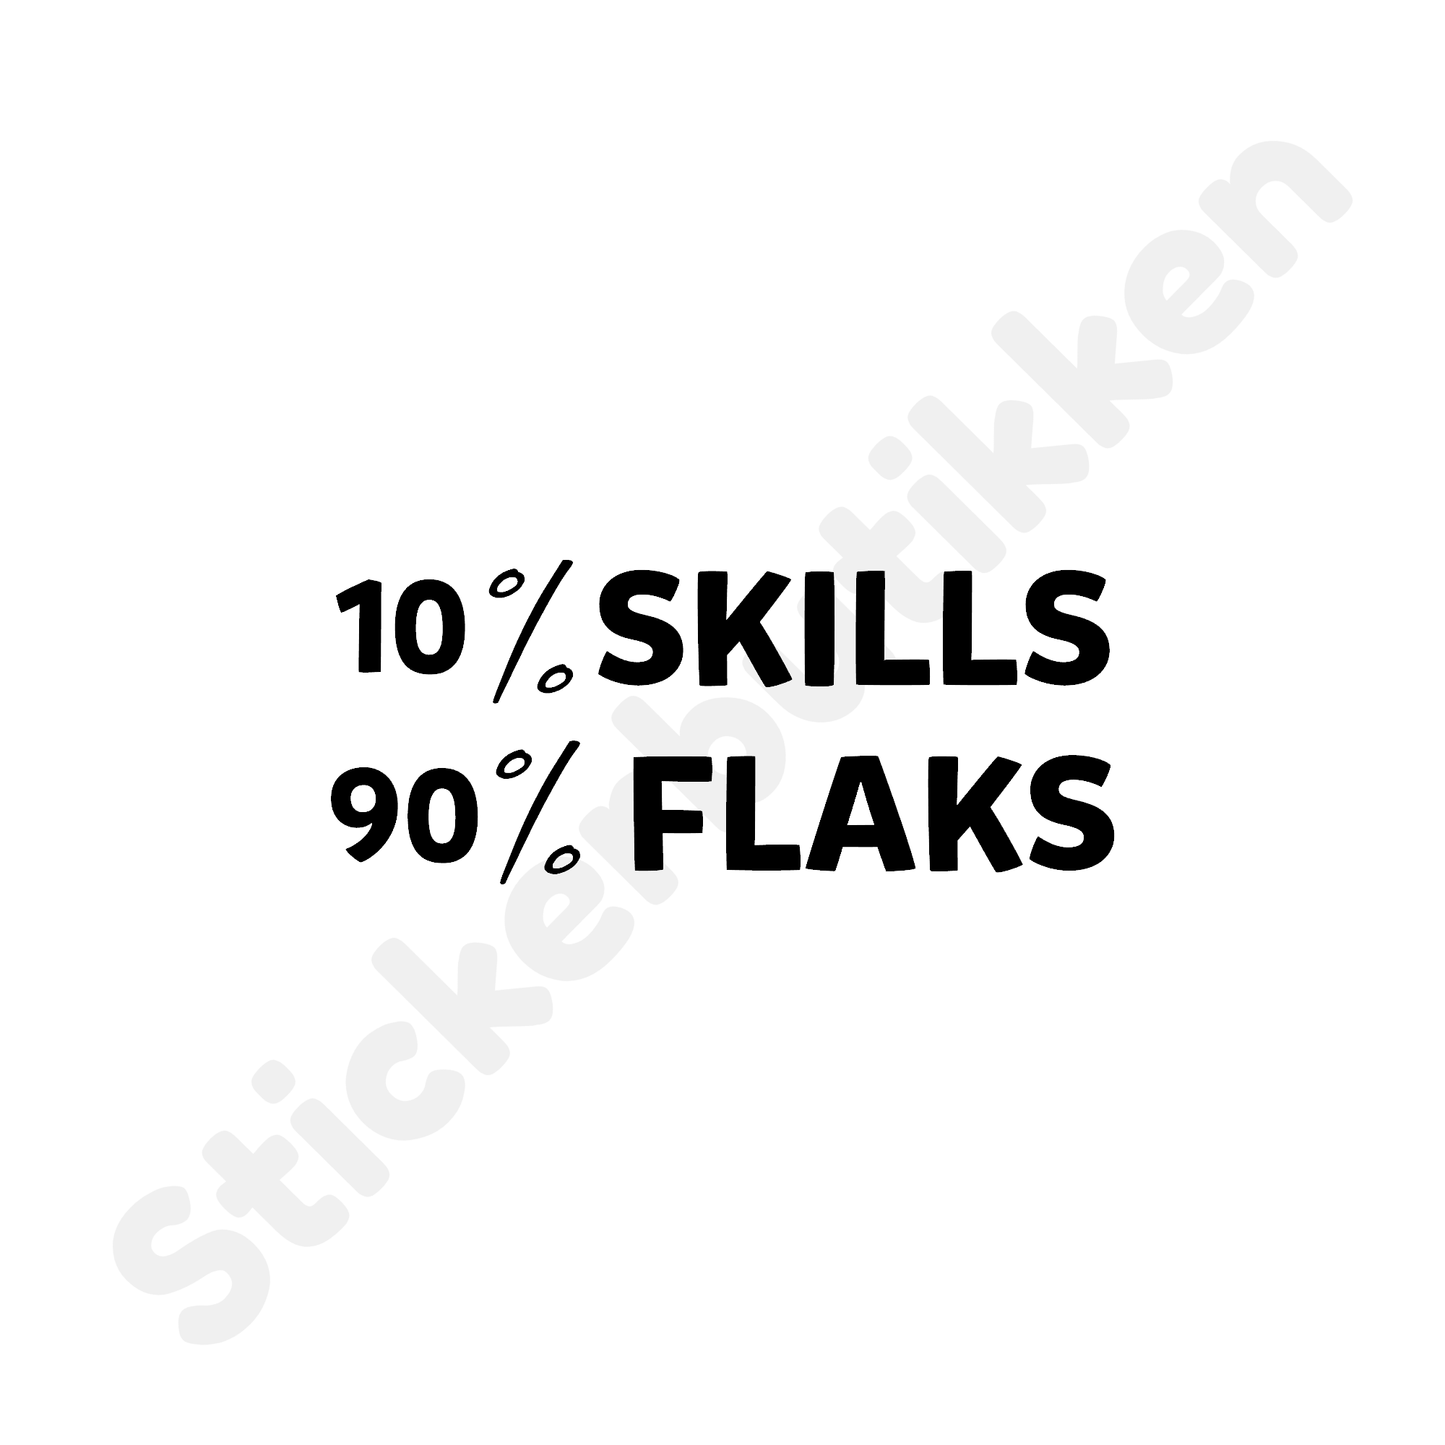 10% Skills 90% Flaks